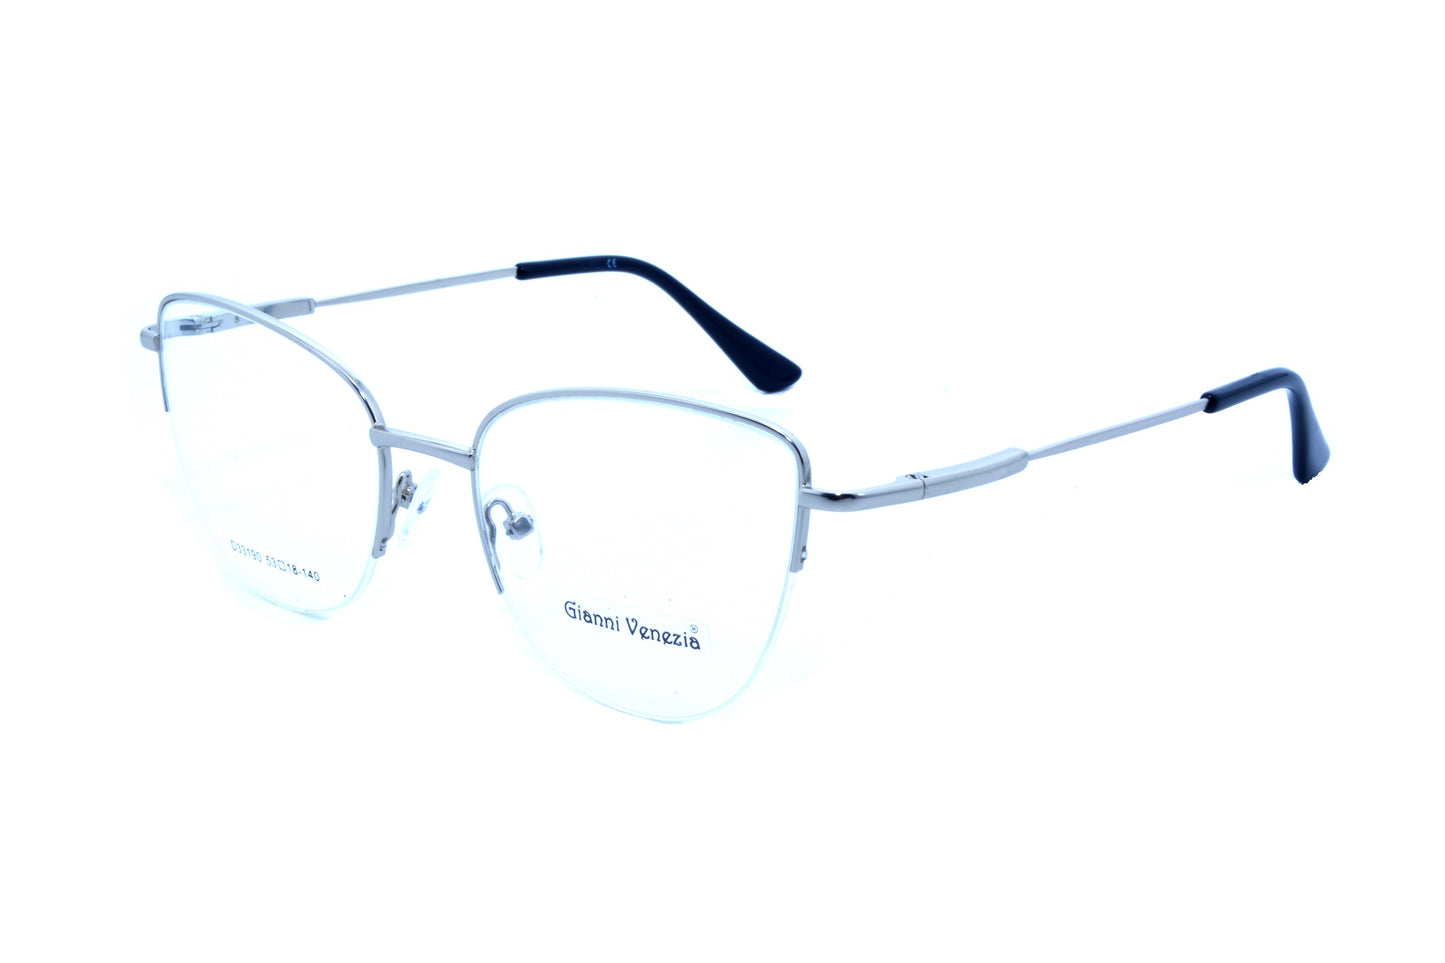 Gianni Vennezia eyewear 33190, C3 - Optics Trading